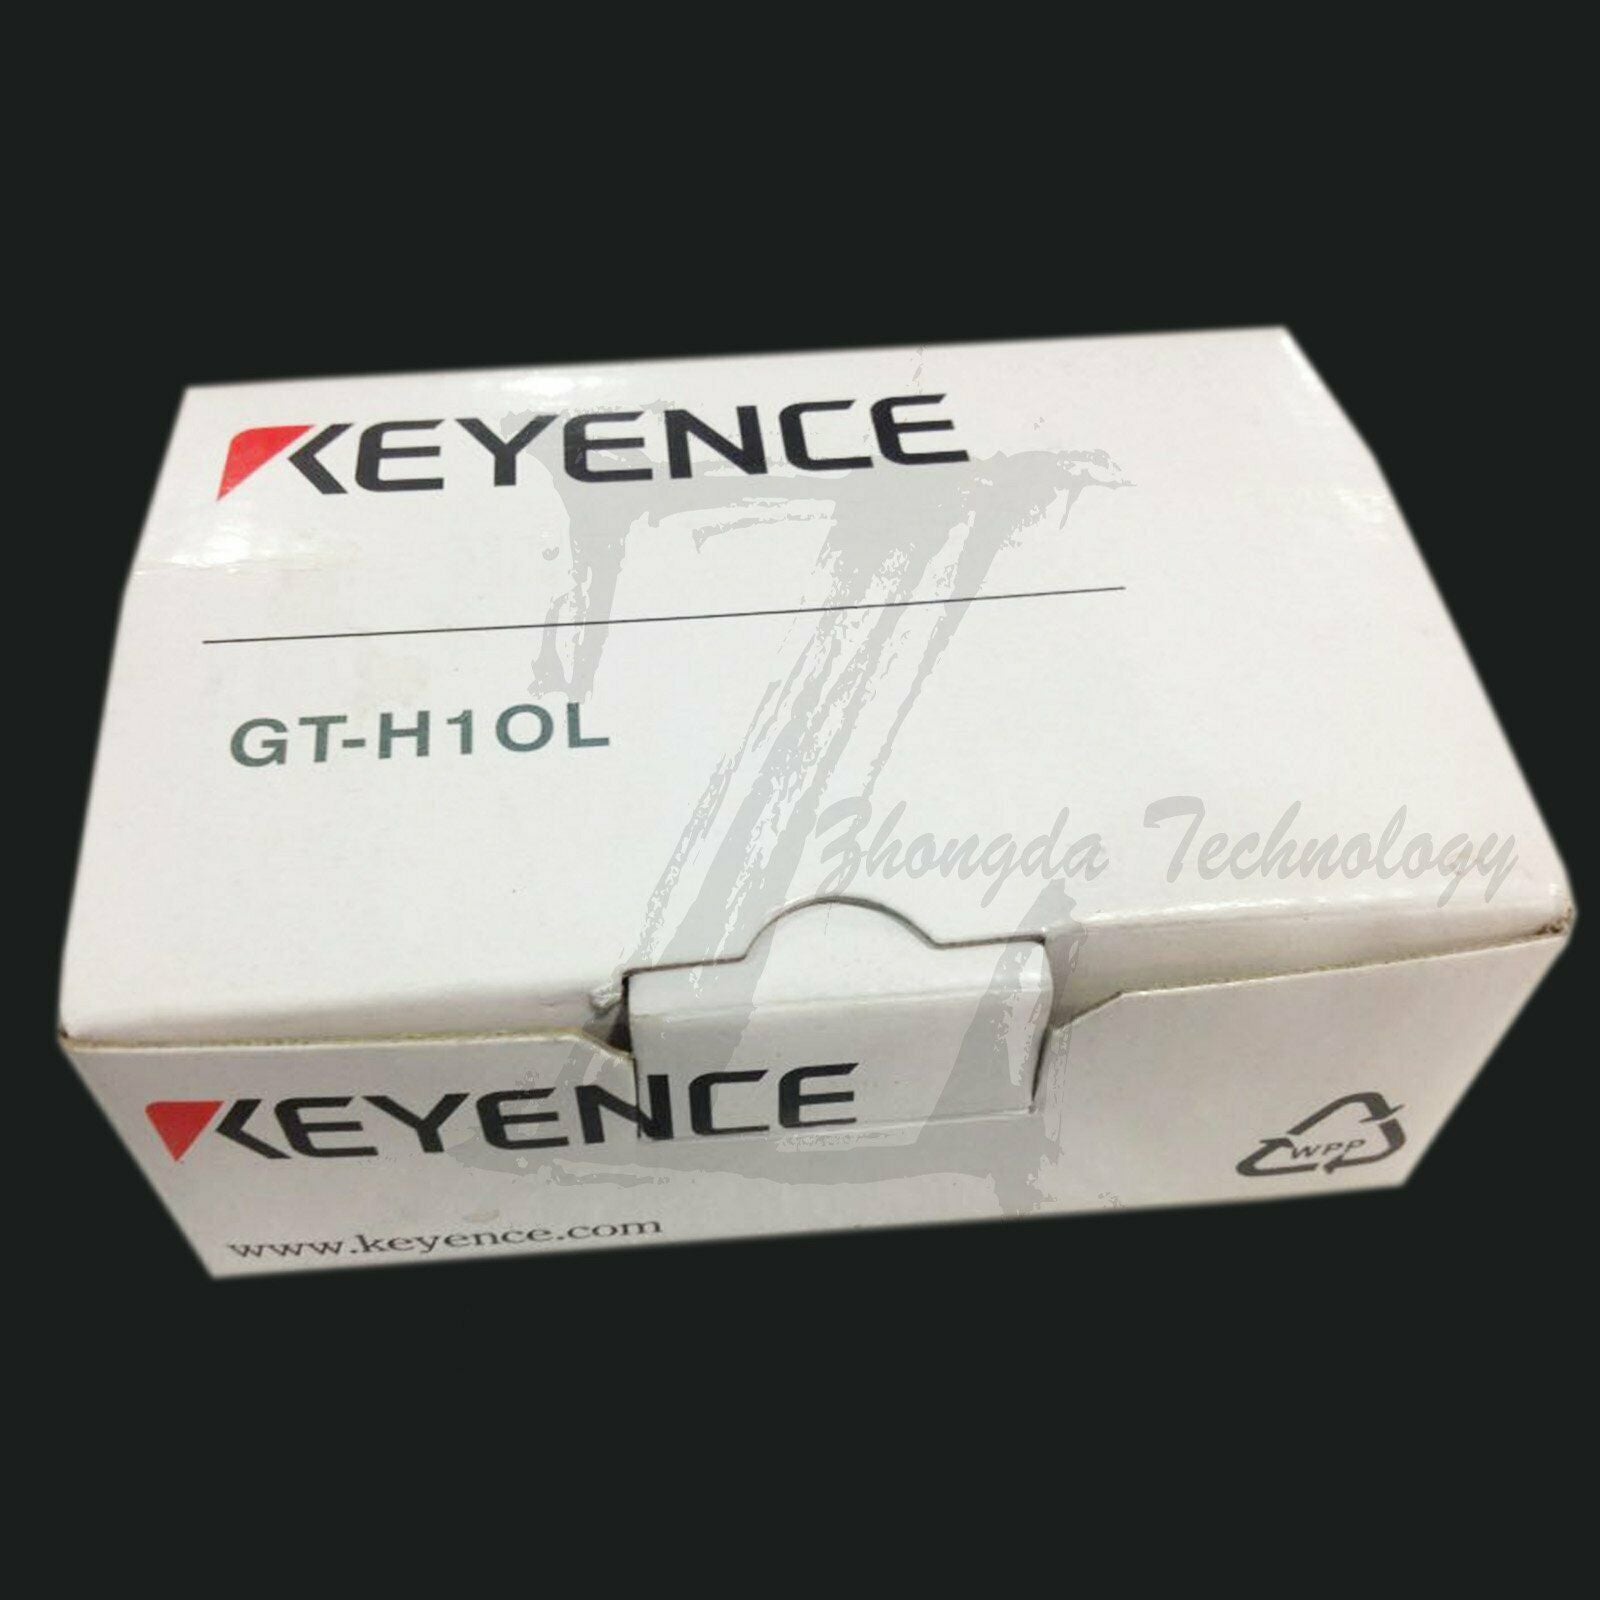 NEW IN BOX 1PC KEYENCE GT-H10L GTH10L Contact Sensors